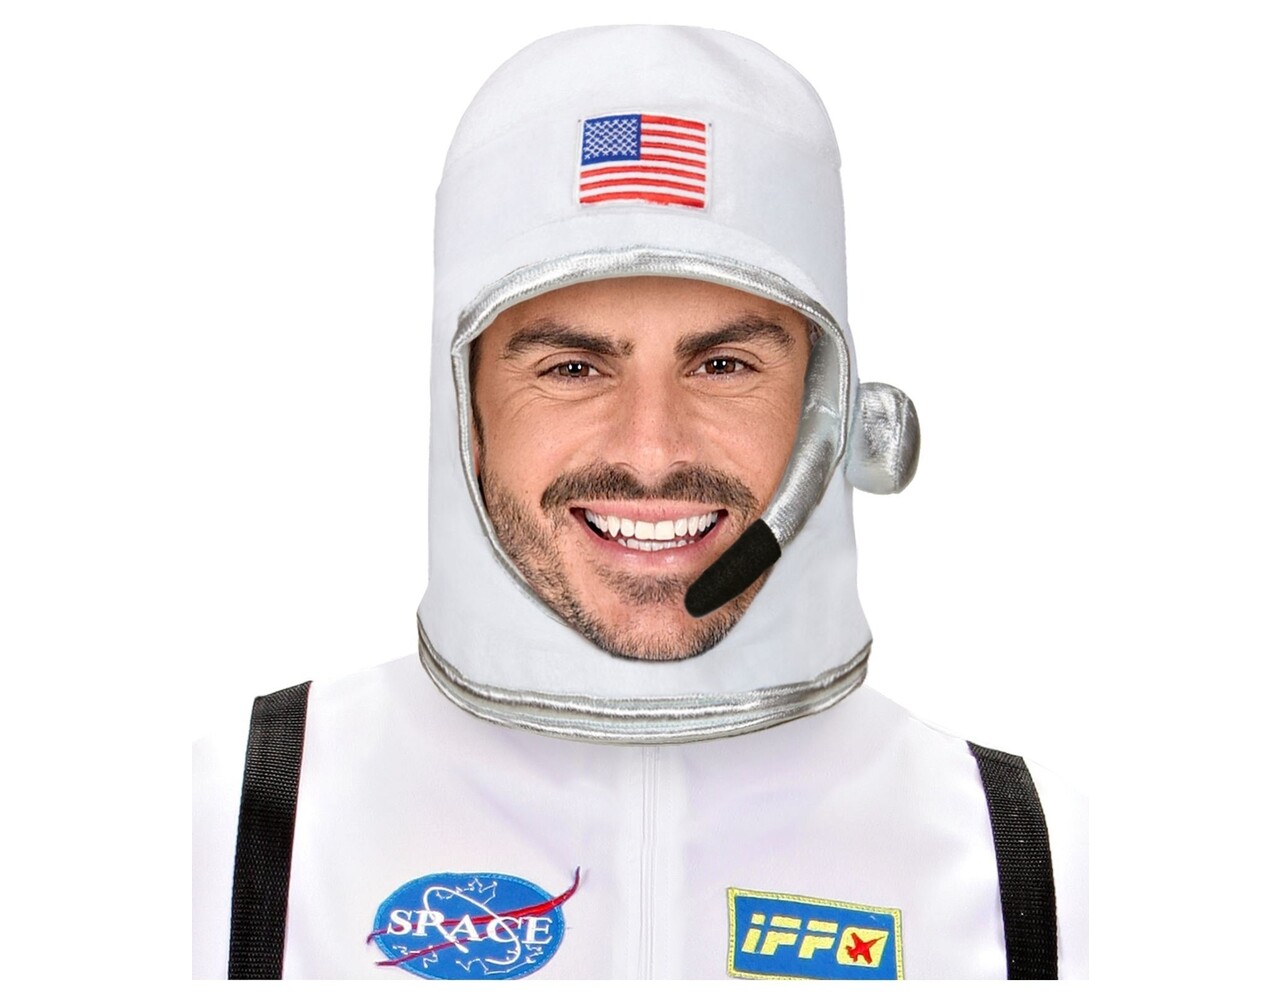 Casco de Astronauta